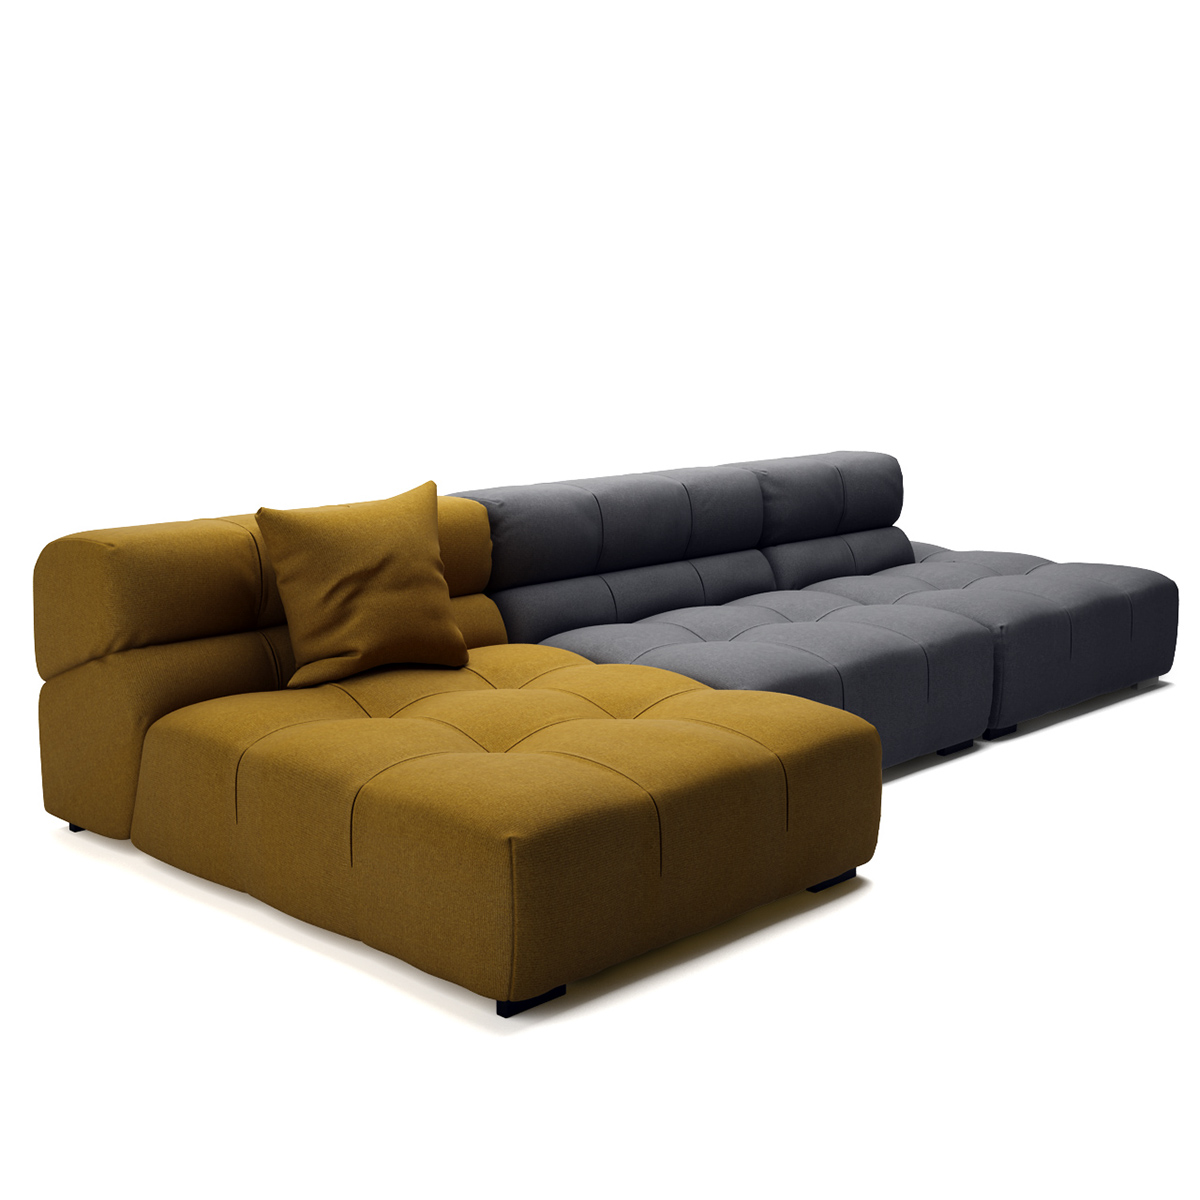 free 3D model furniture 3dsmax vray archviz B&B Italia